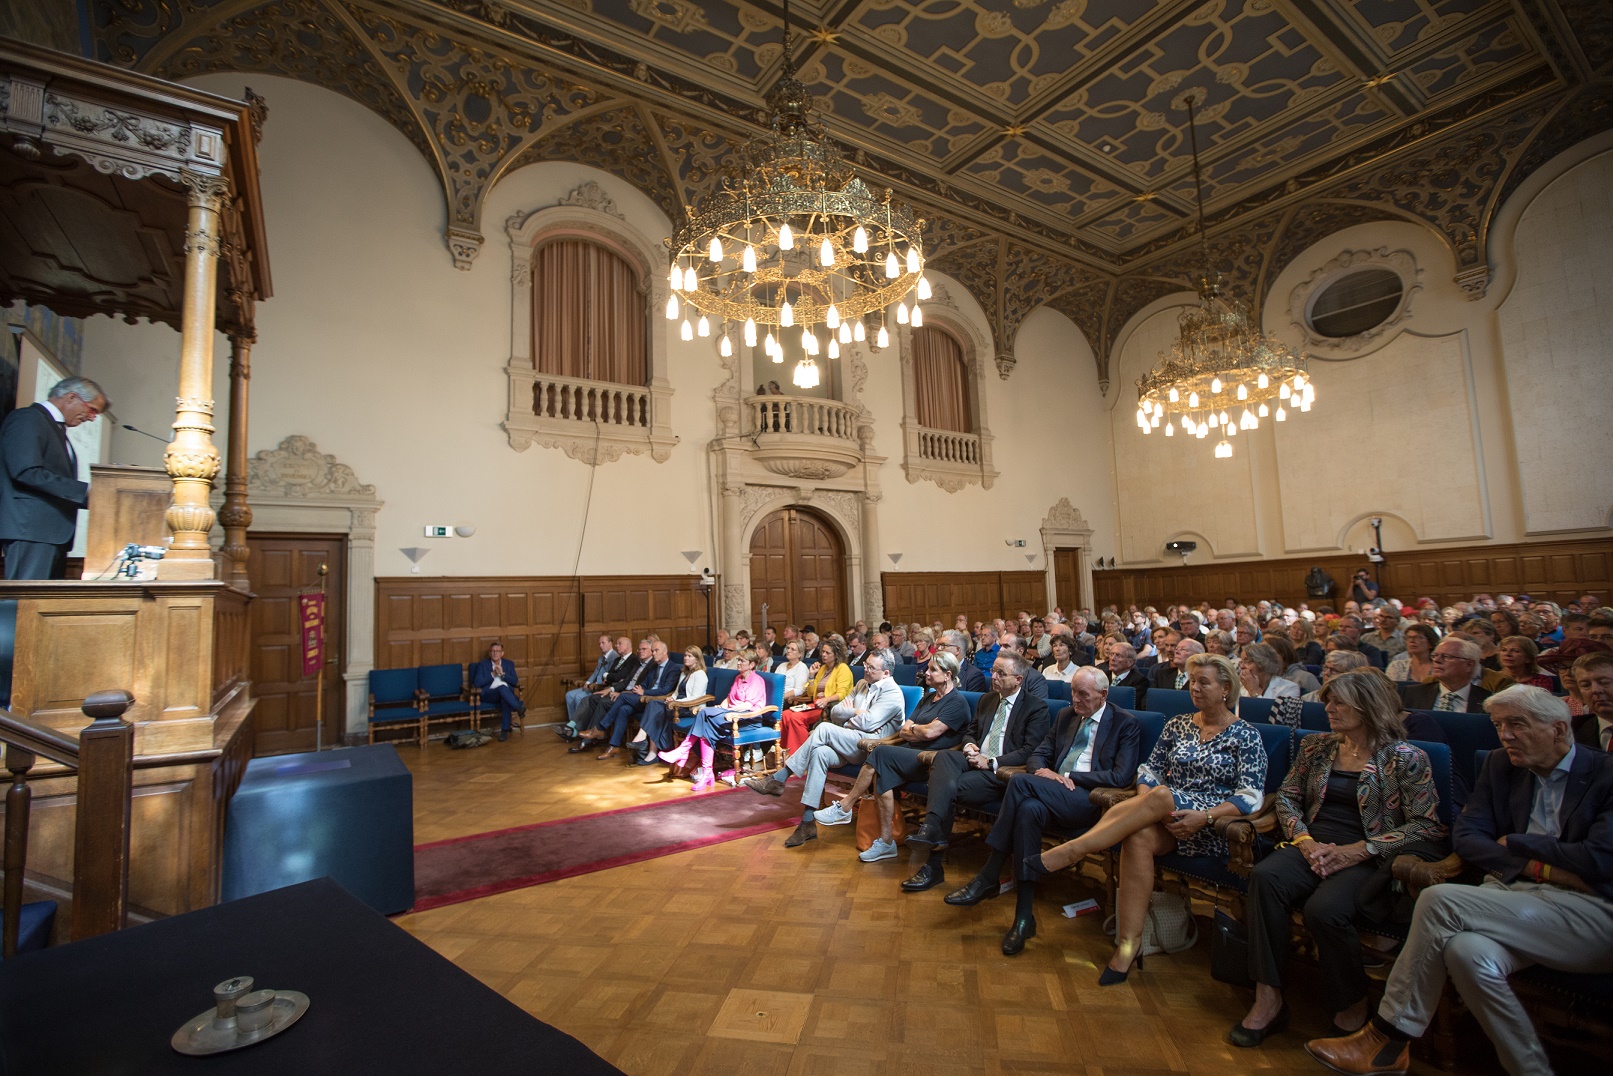 Lecture in the Academy building (Photo: Gerhard Taatgen)